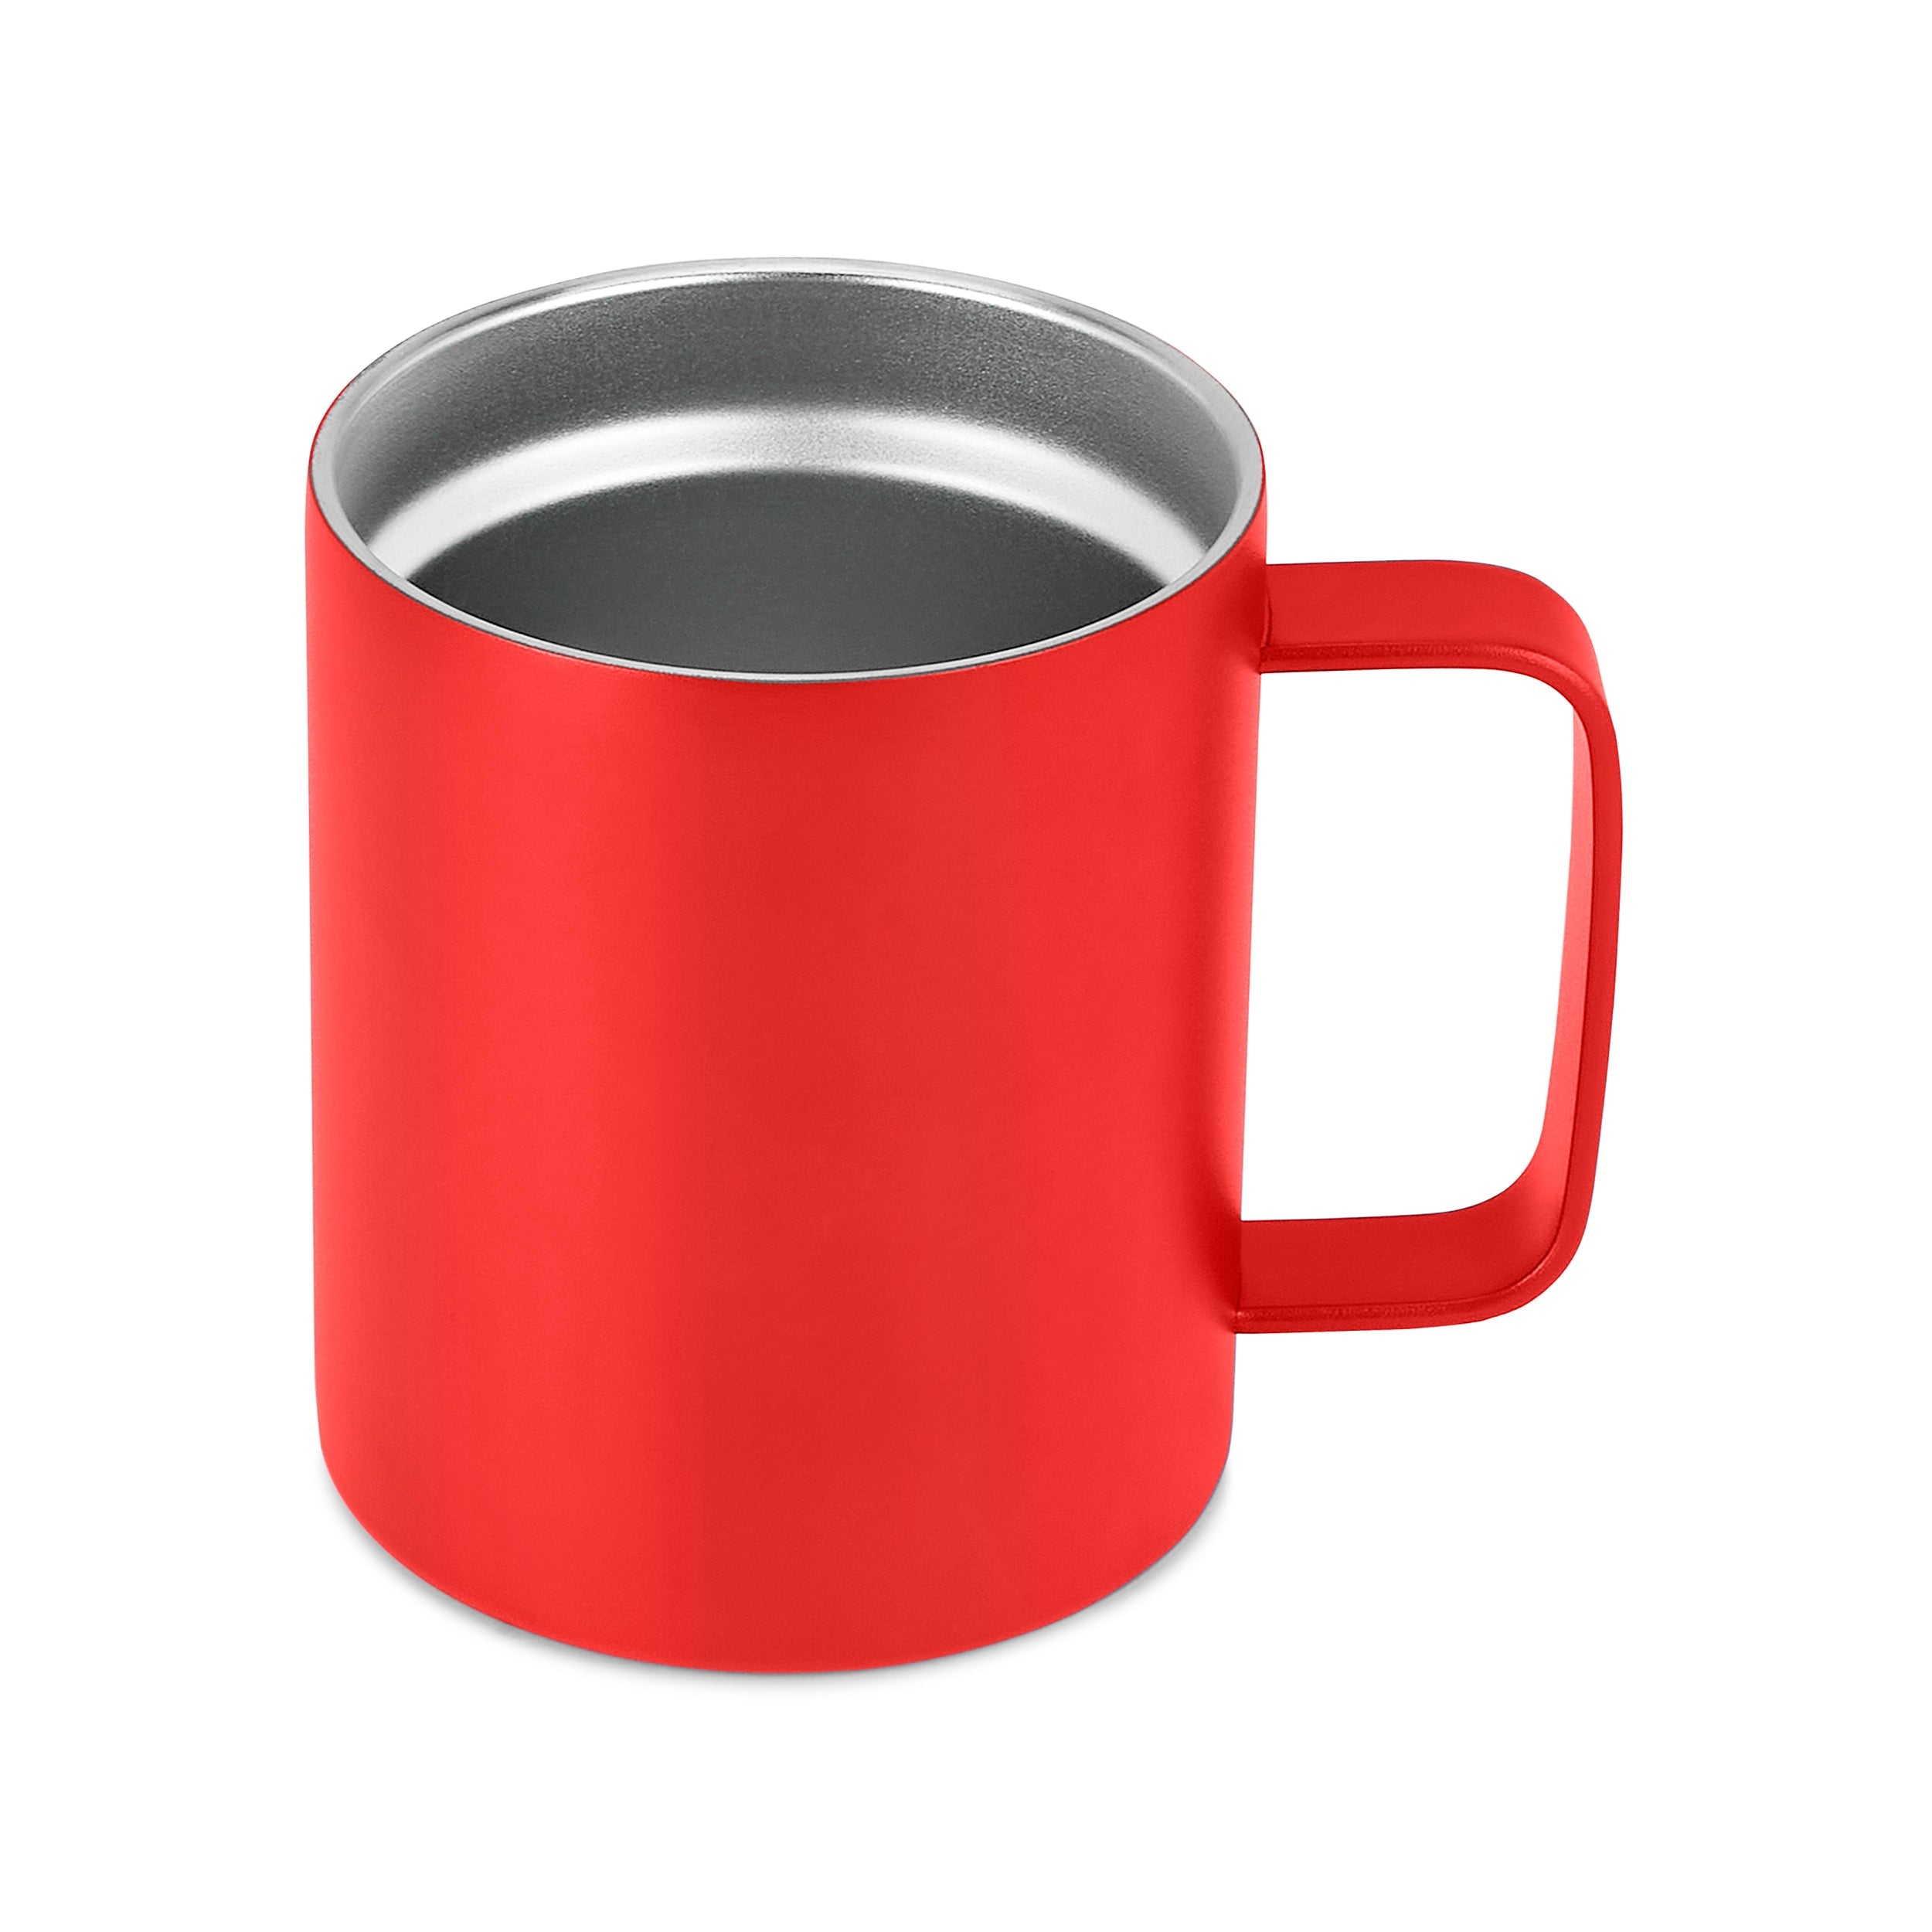 12oz Coffee Mug- Full of Humor